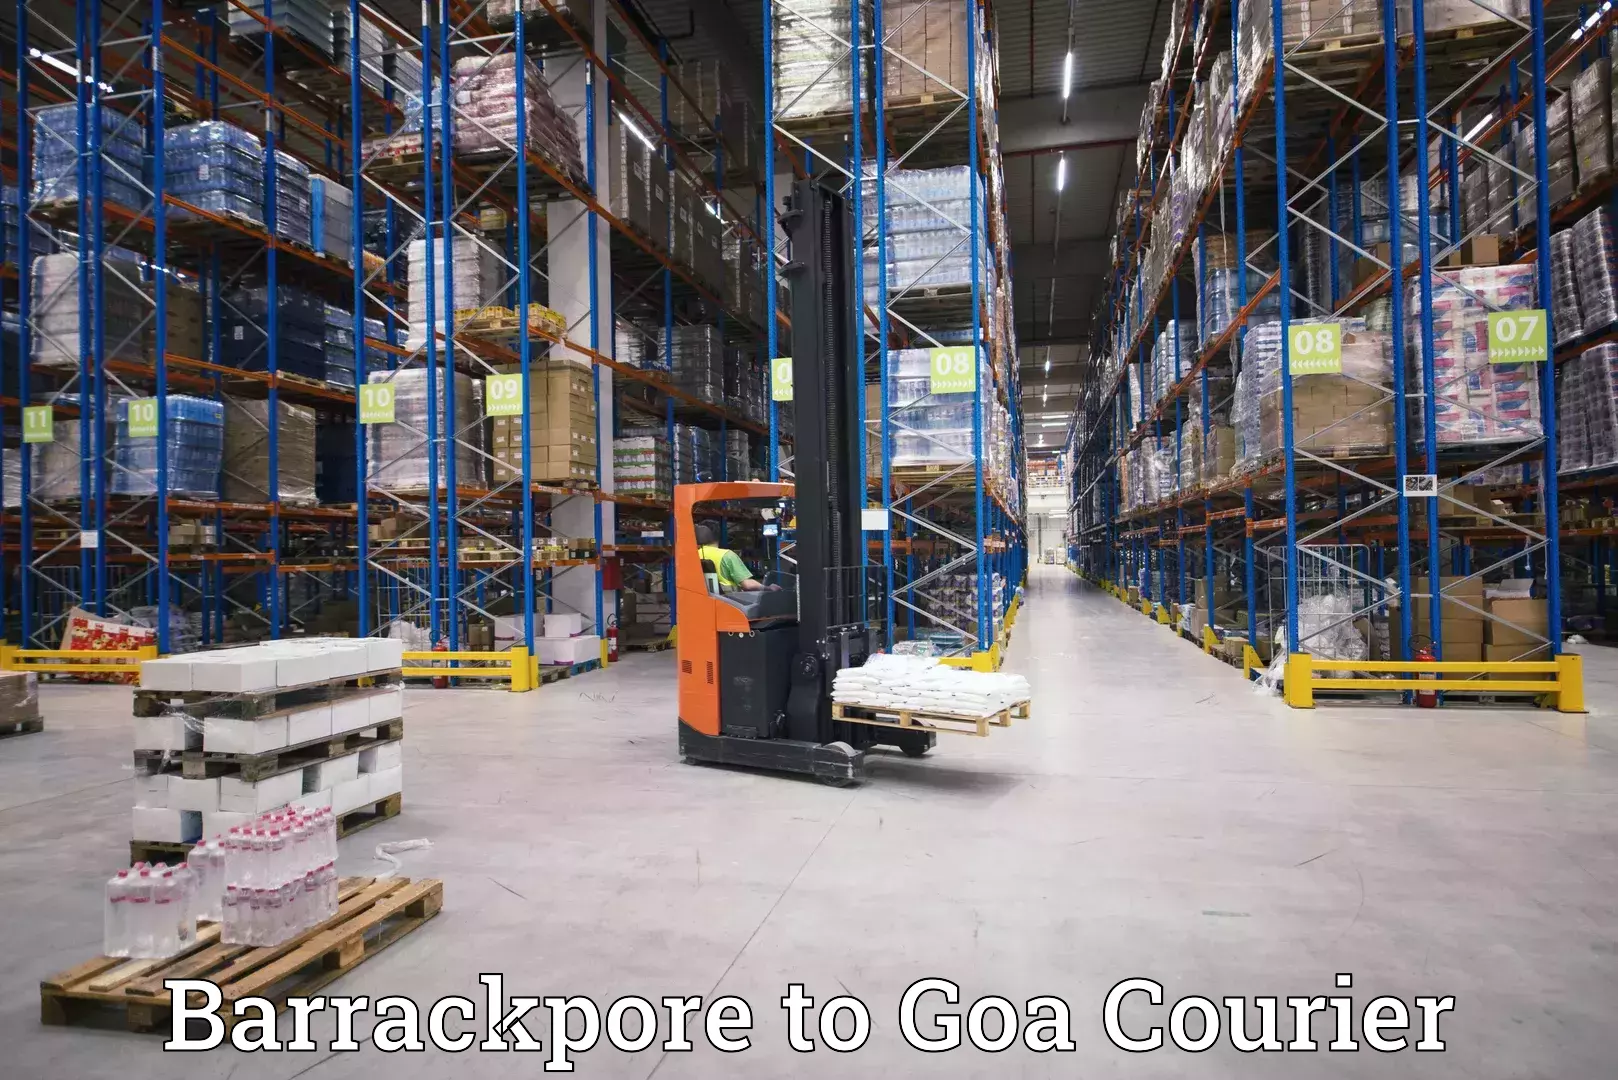 Nationwide parcel services Barrackpore to Vasco da Gama